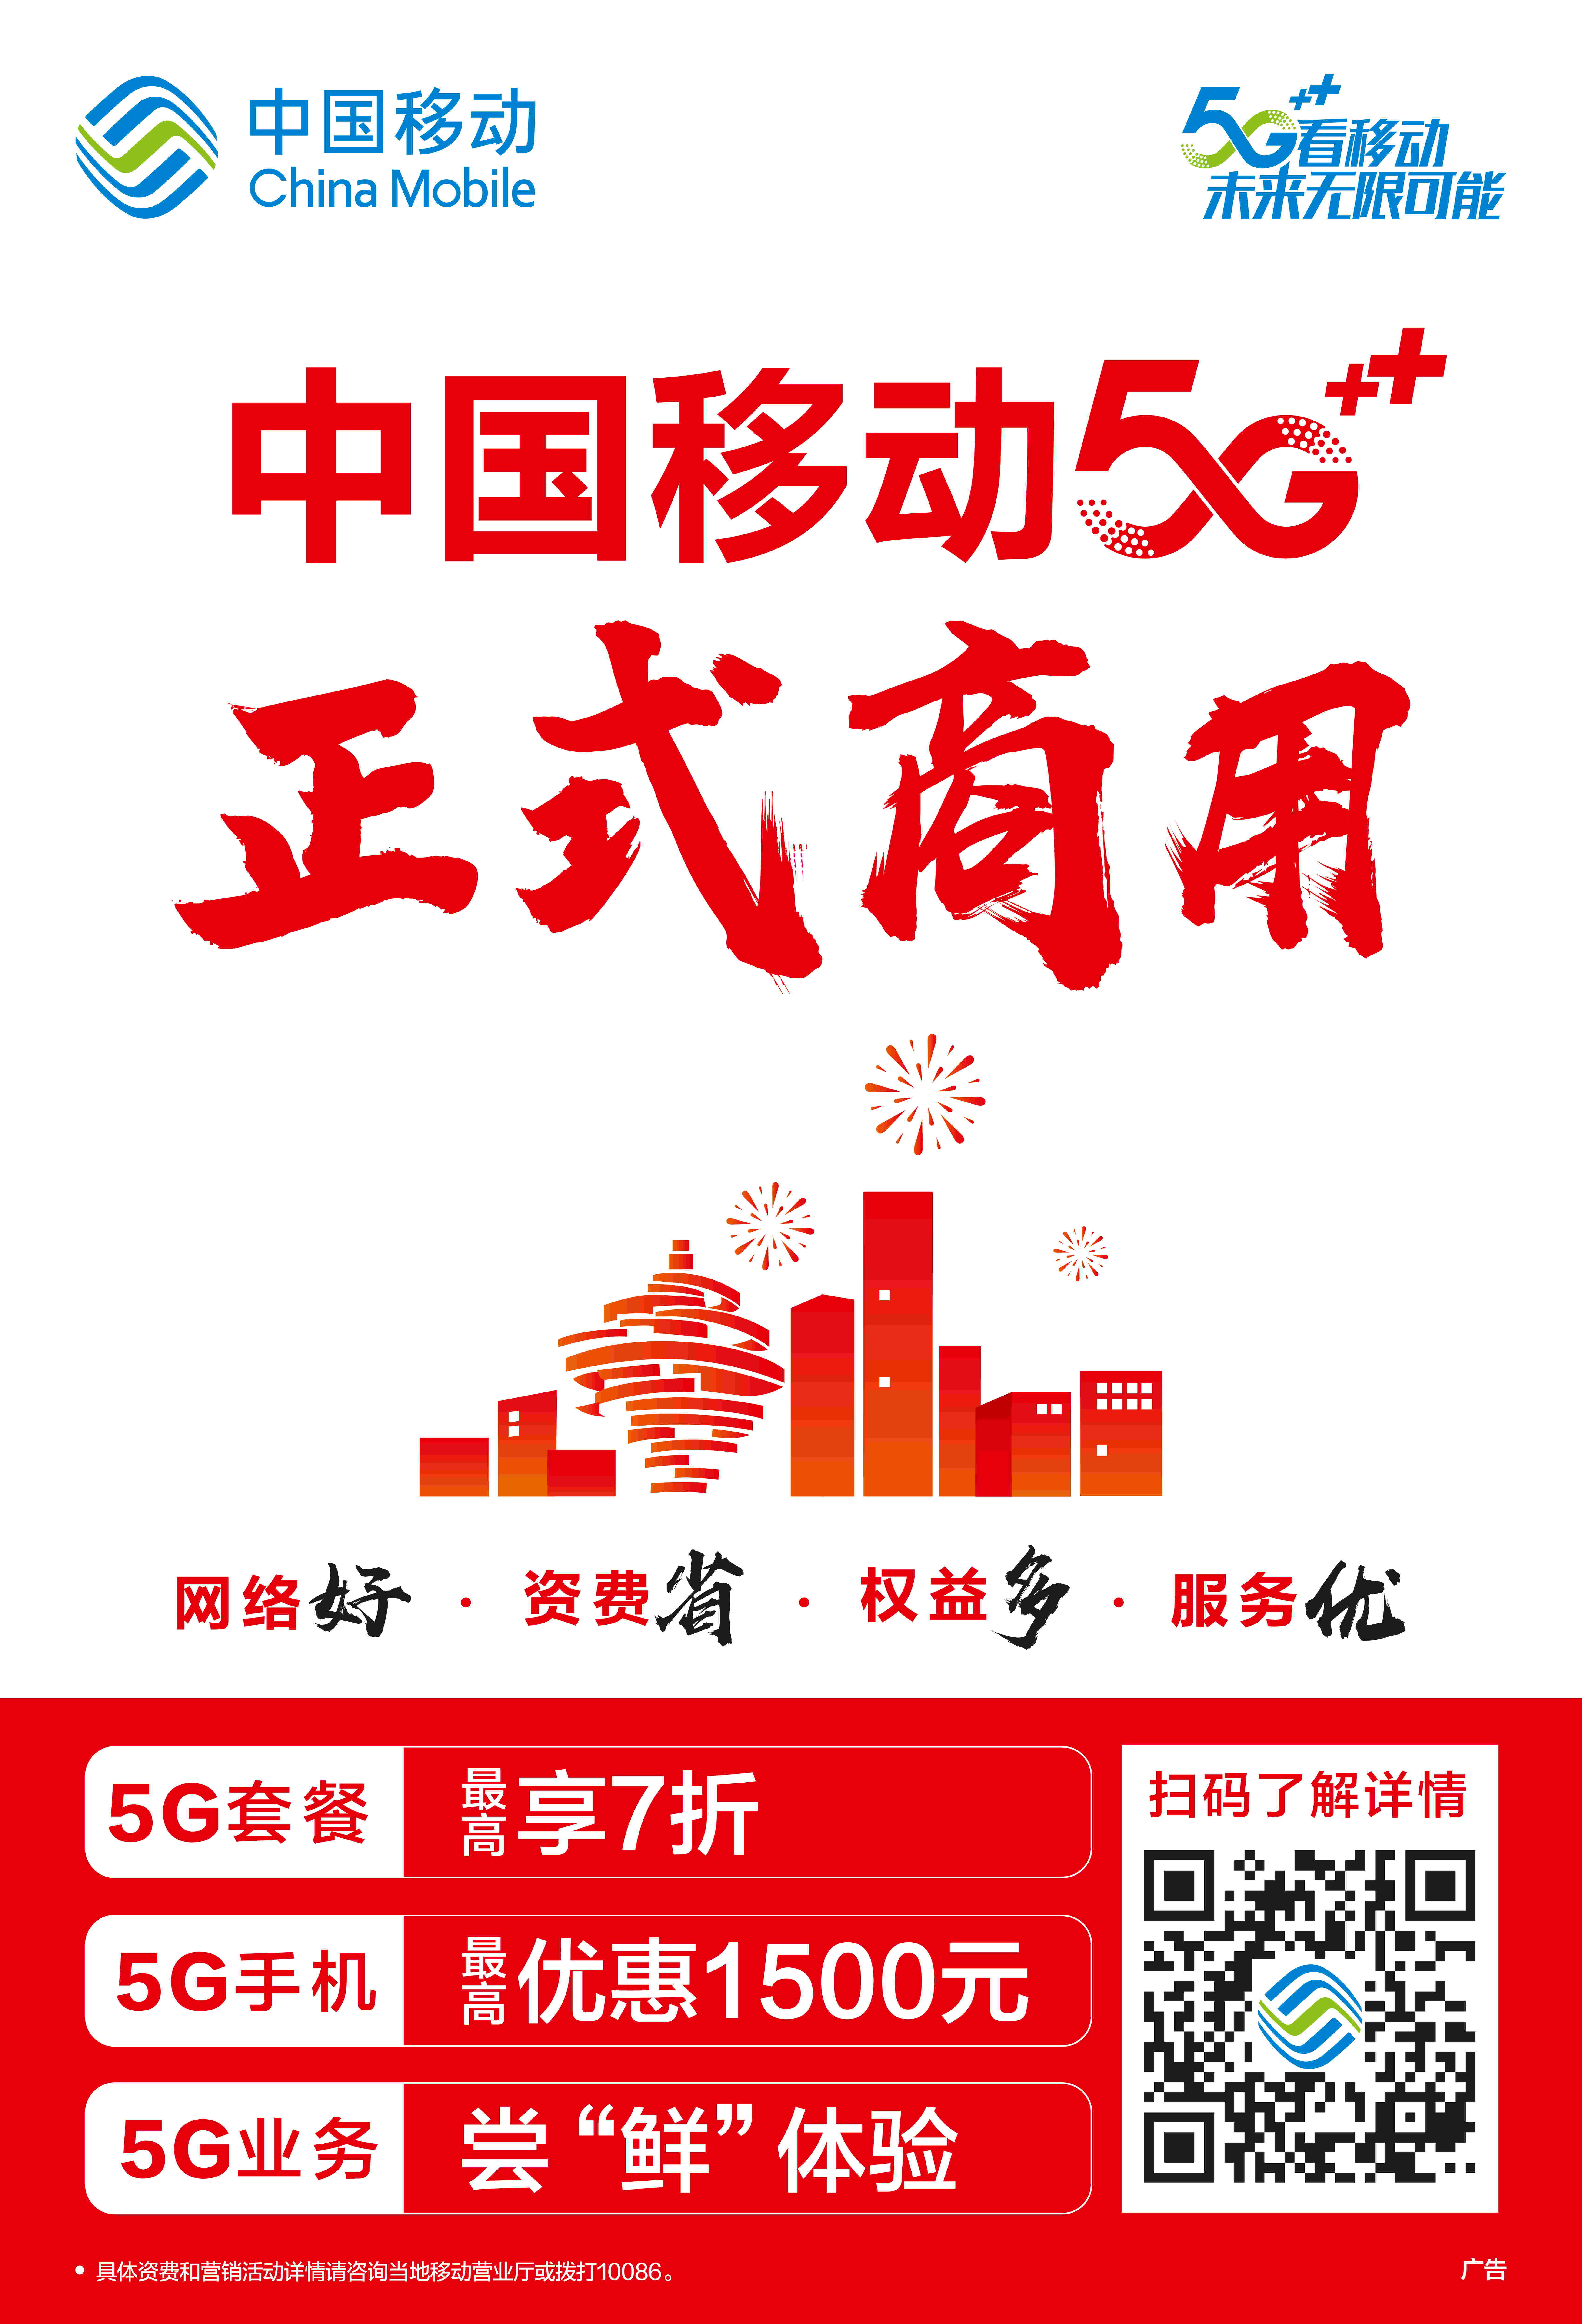 中国 5G 崛起：从跟随到引领，开启智能生活新篇章  第6张